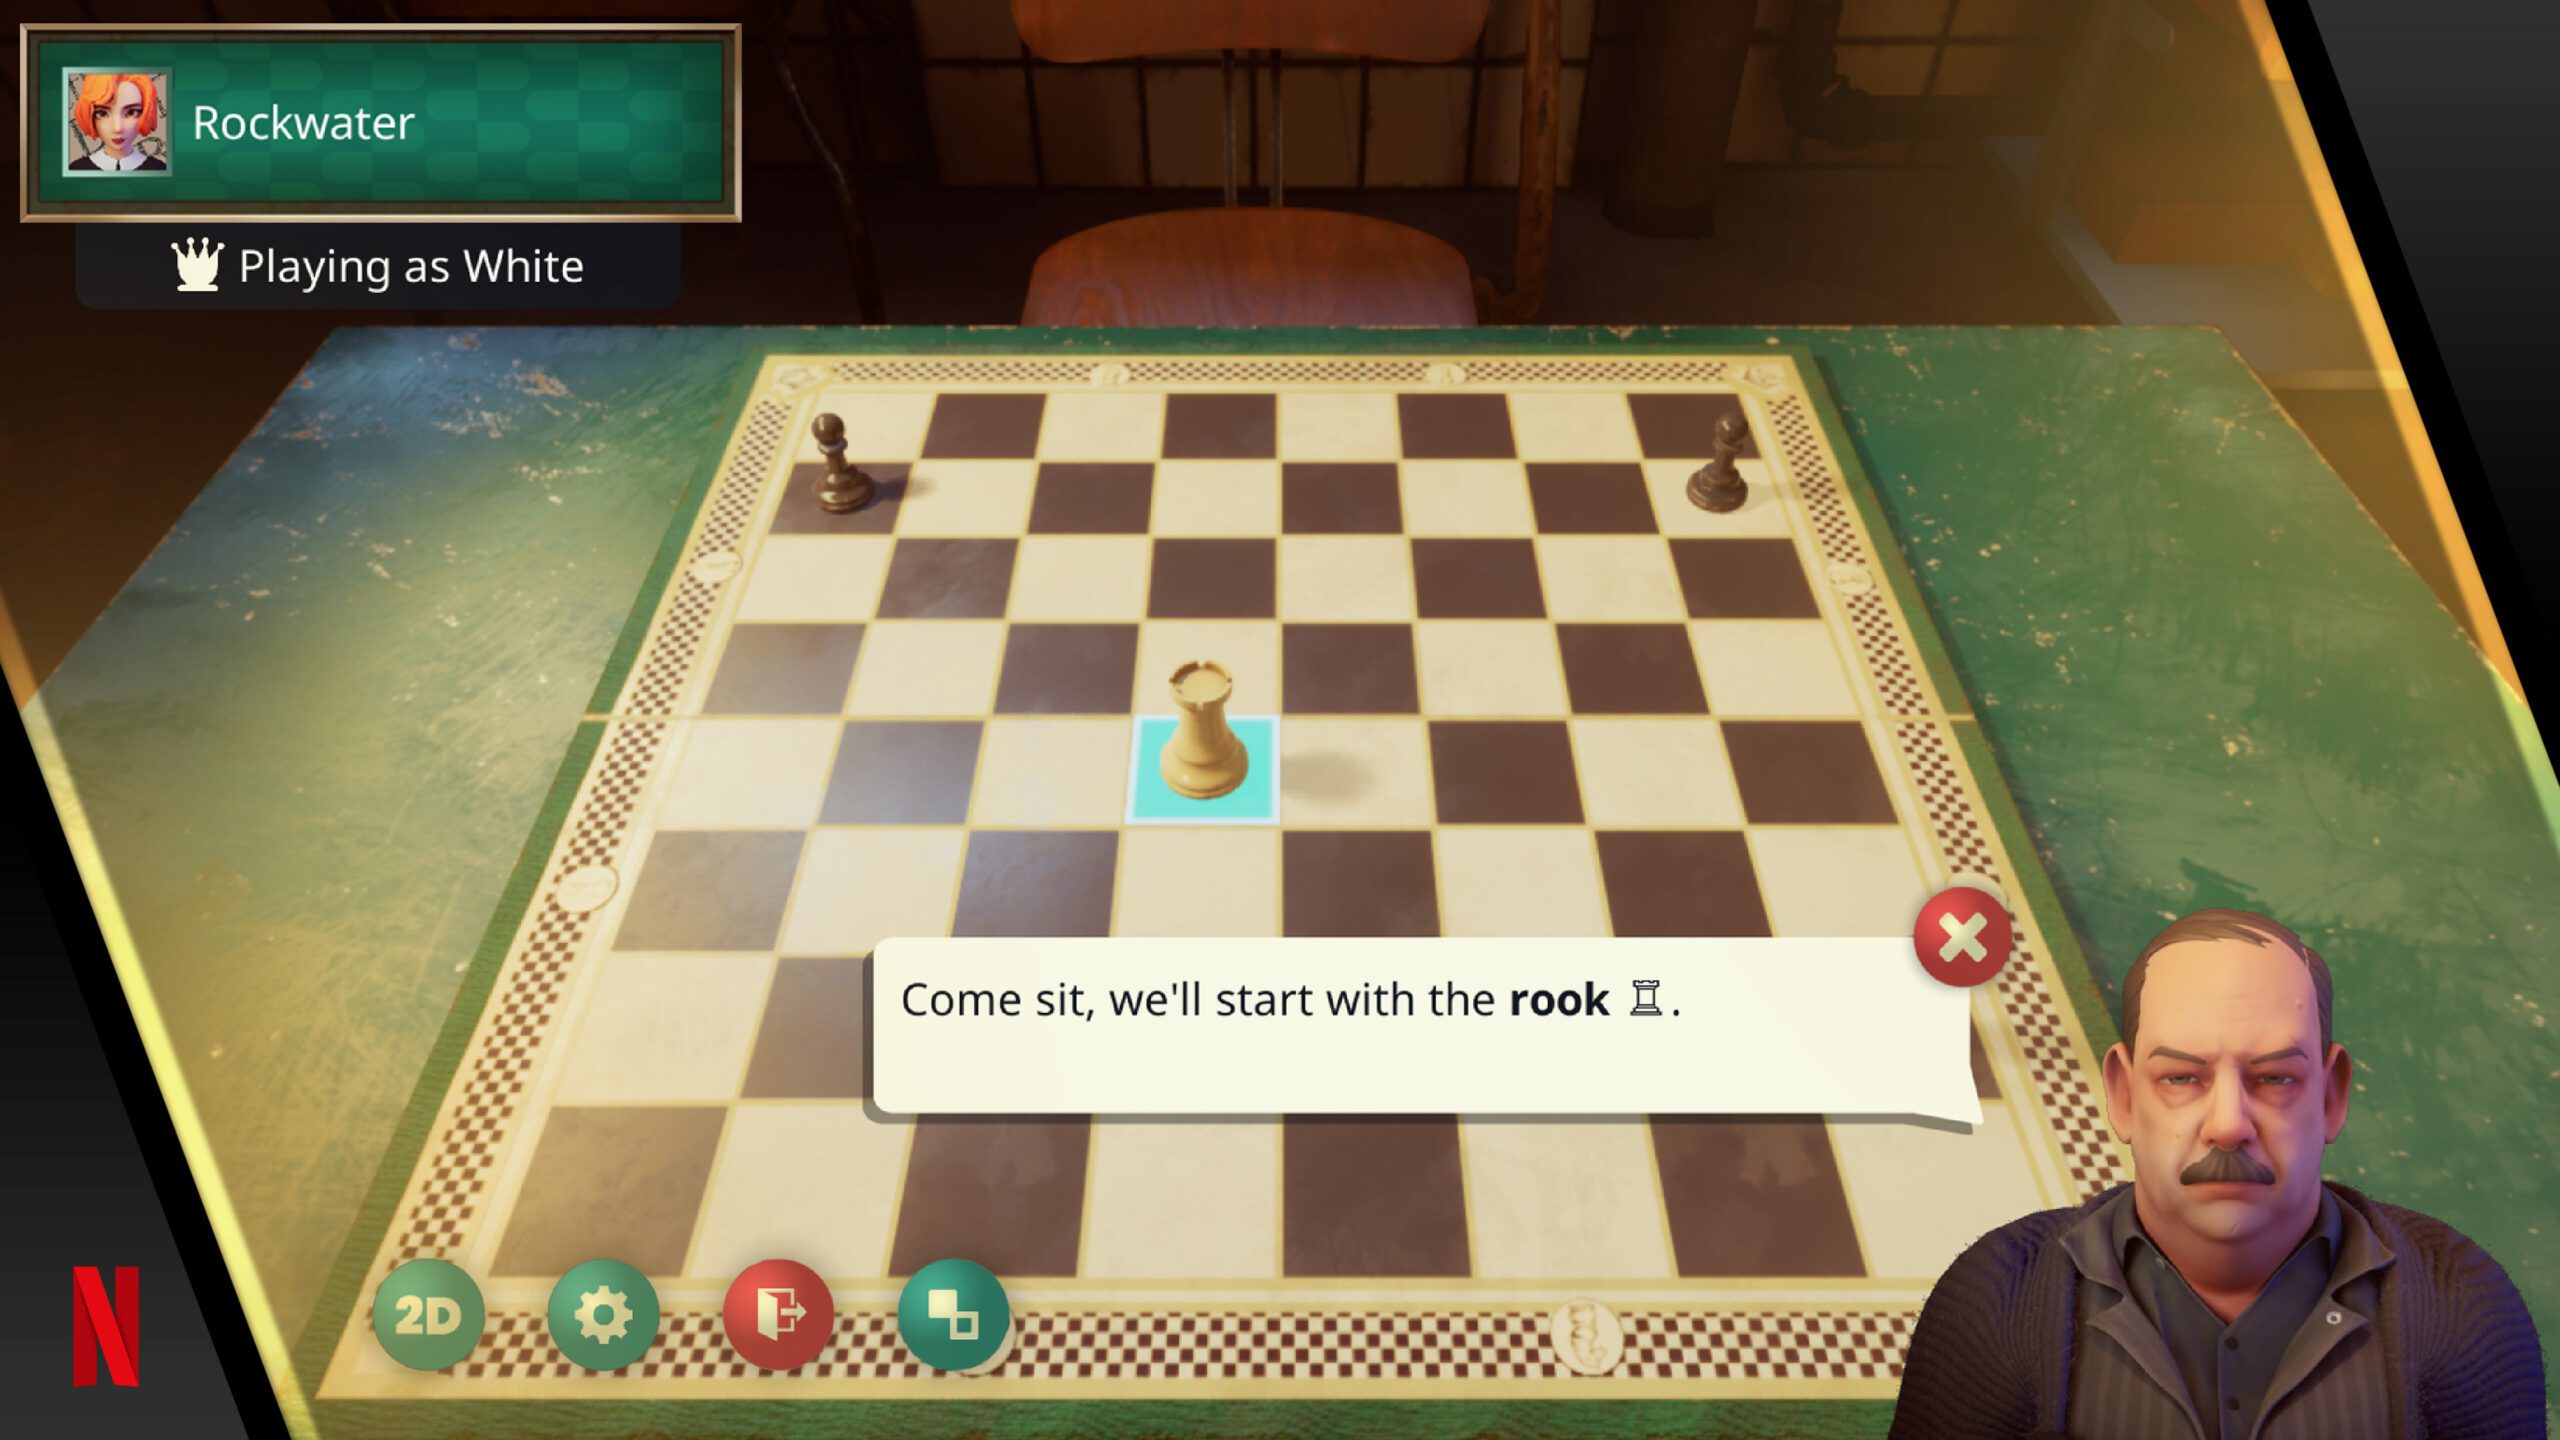 The Gambit Chess Player – chess